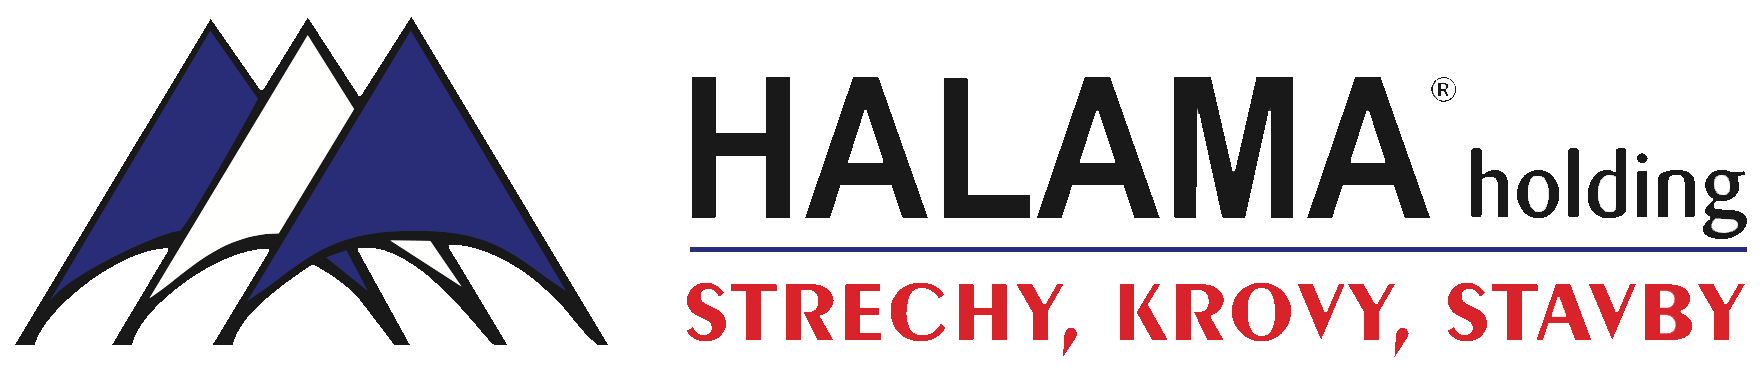 Halama logo